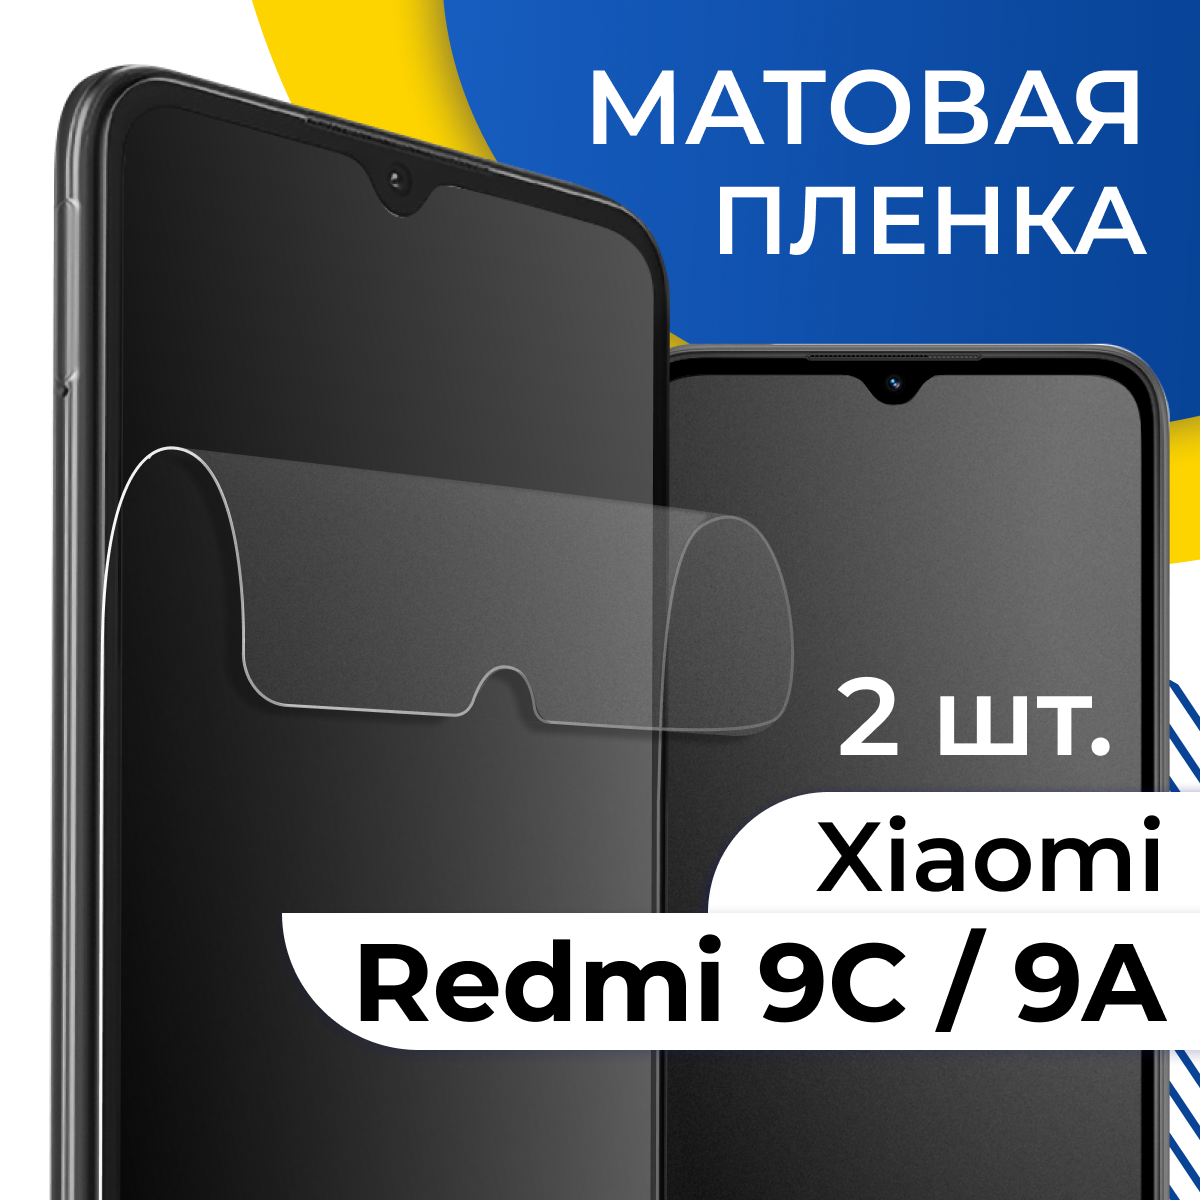 Комплект 2 шт. Матовая гидрогелевая пленка для Xiaomi Redmi 9C и Redmi 9A / Самовосстанавливающаяся защитная пленка на телефон Сяоми Редми 9С и Редми 9А